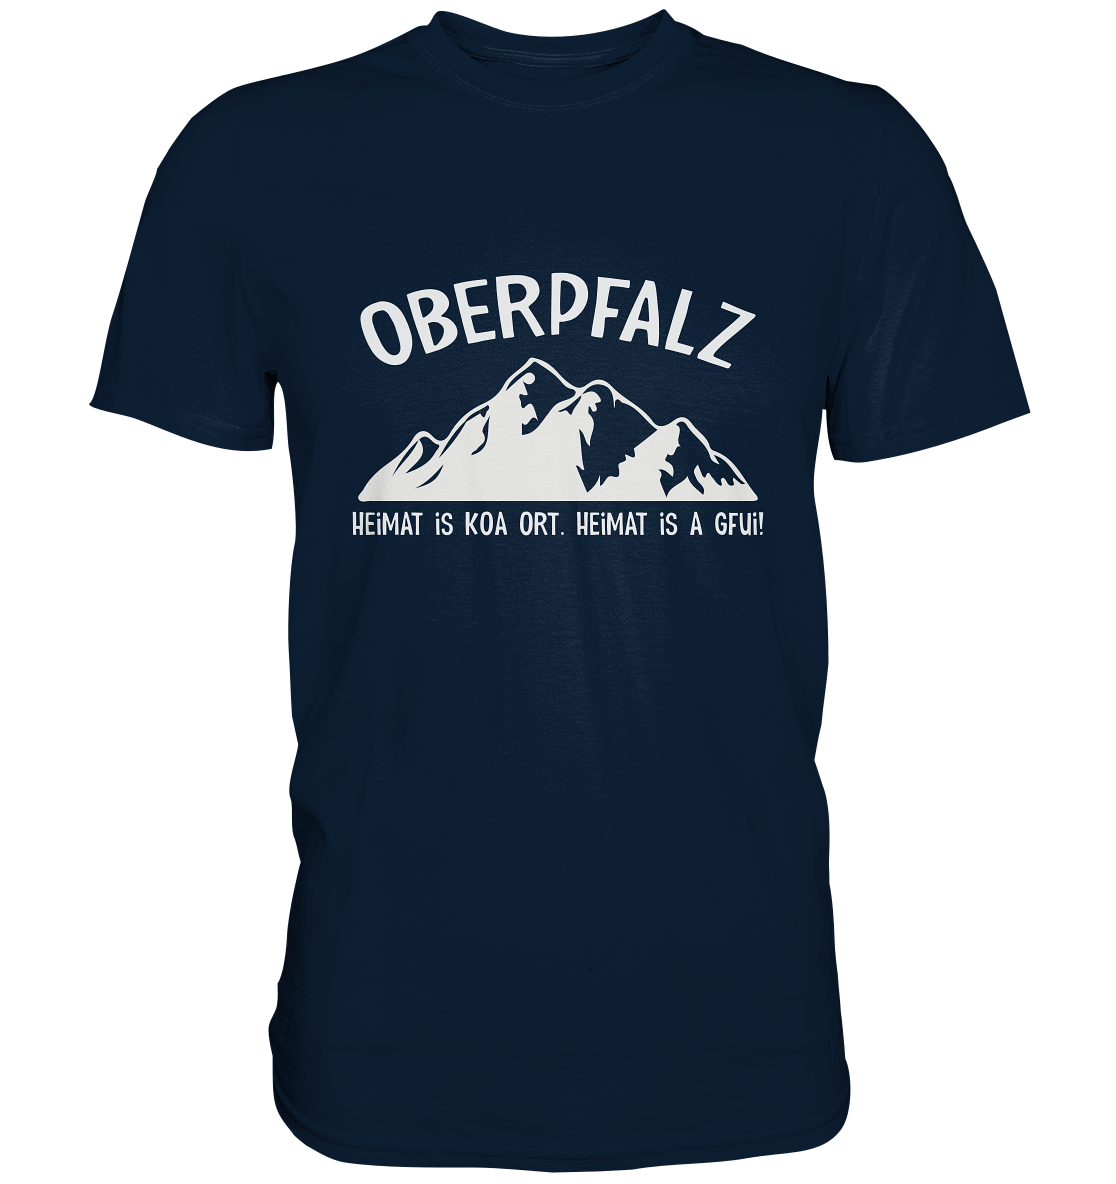 Oberpfalz. Heimat is koa Ort. Heimat is a Gfui. - Premium Shirt